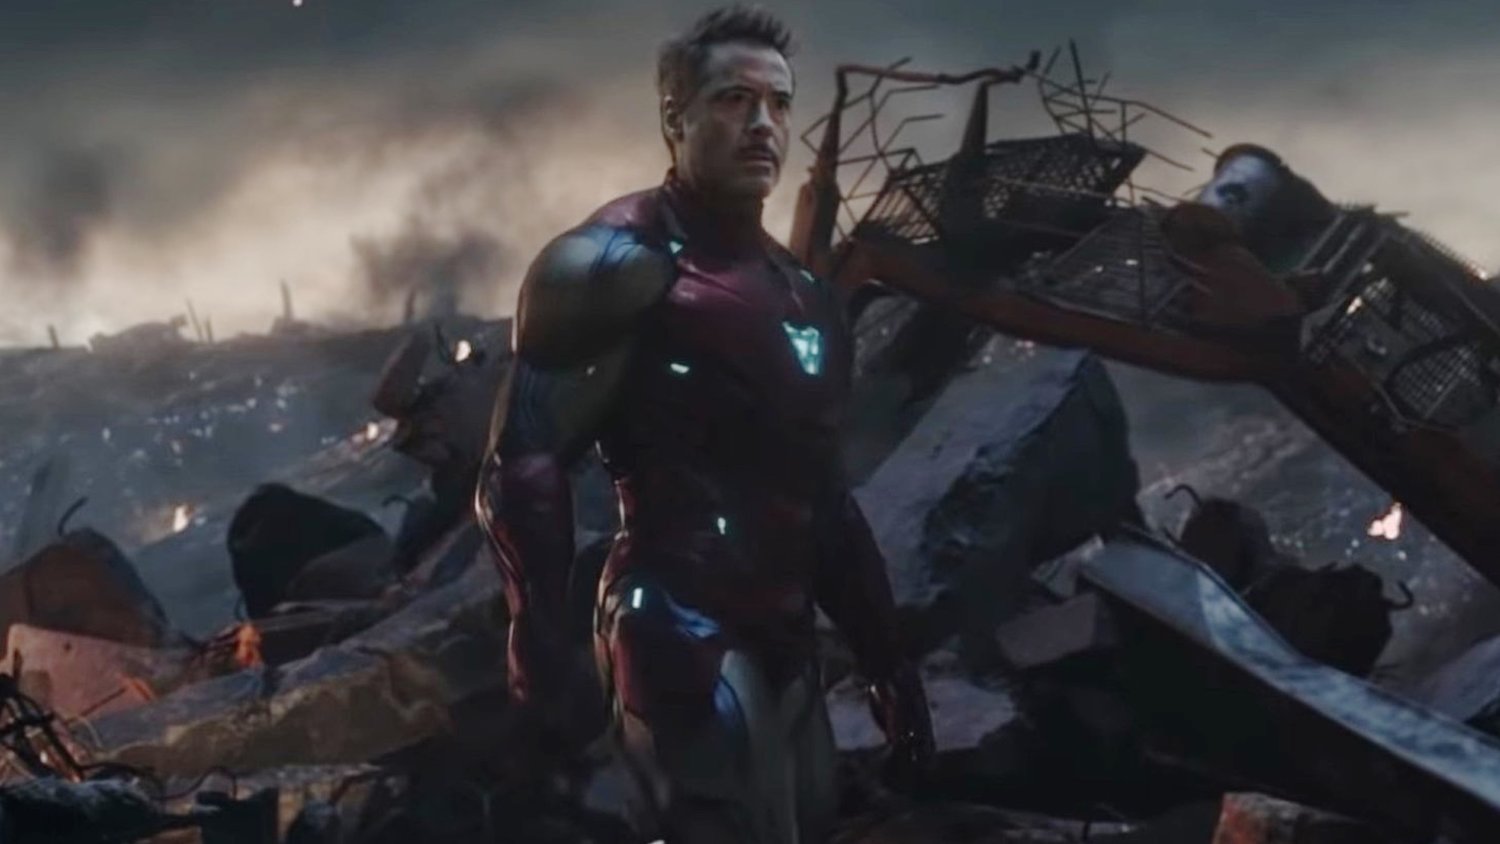 Đội ngũ kỹ xảo của Avengers: Endgame kể về cảnh cuối cùng của Iron Man